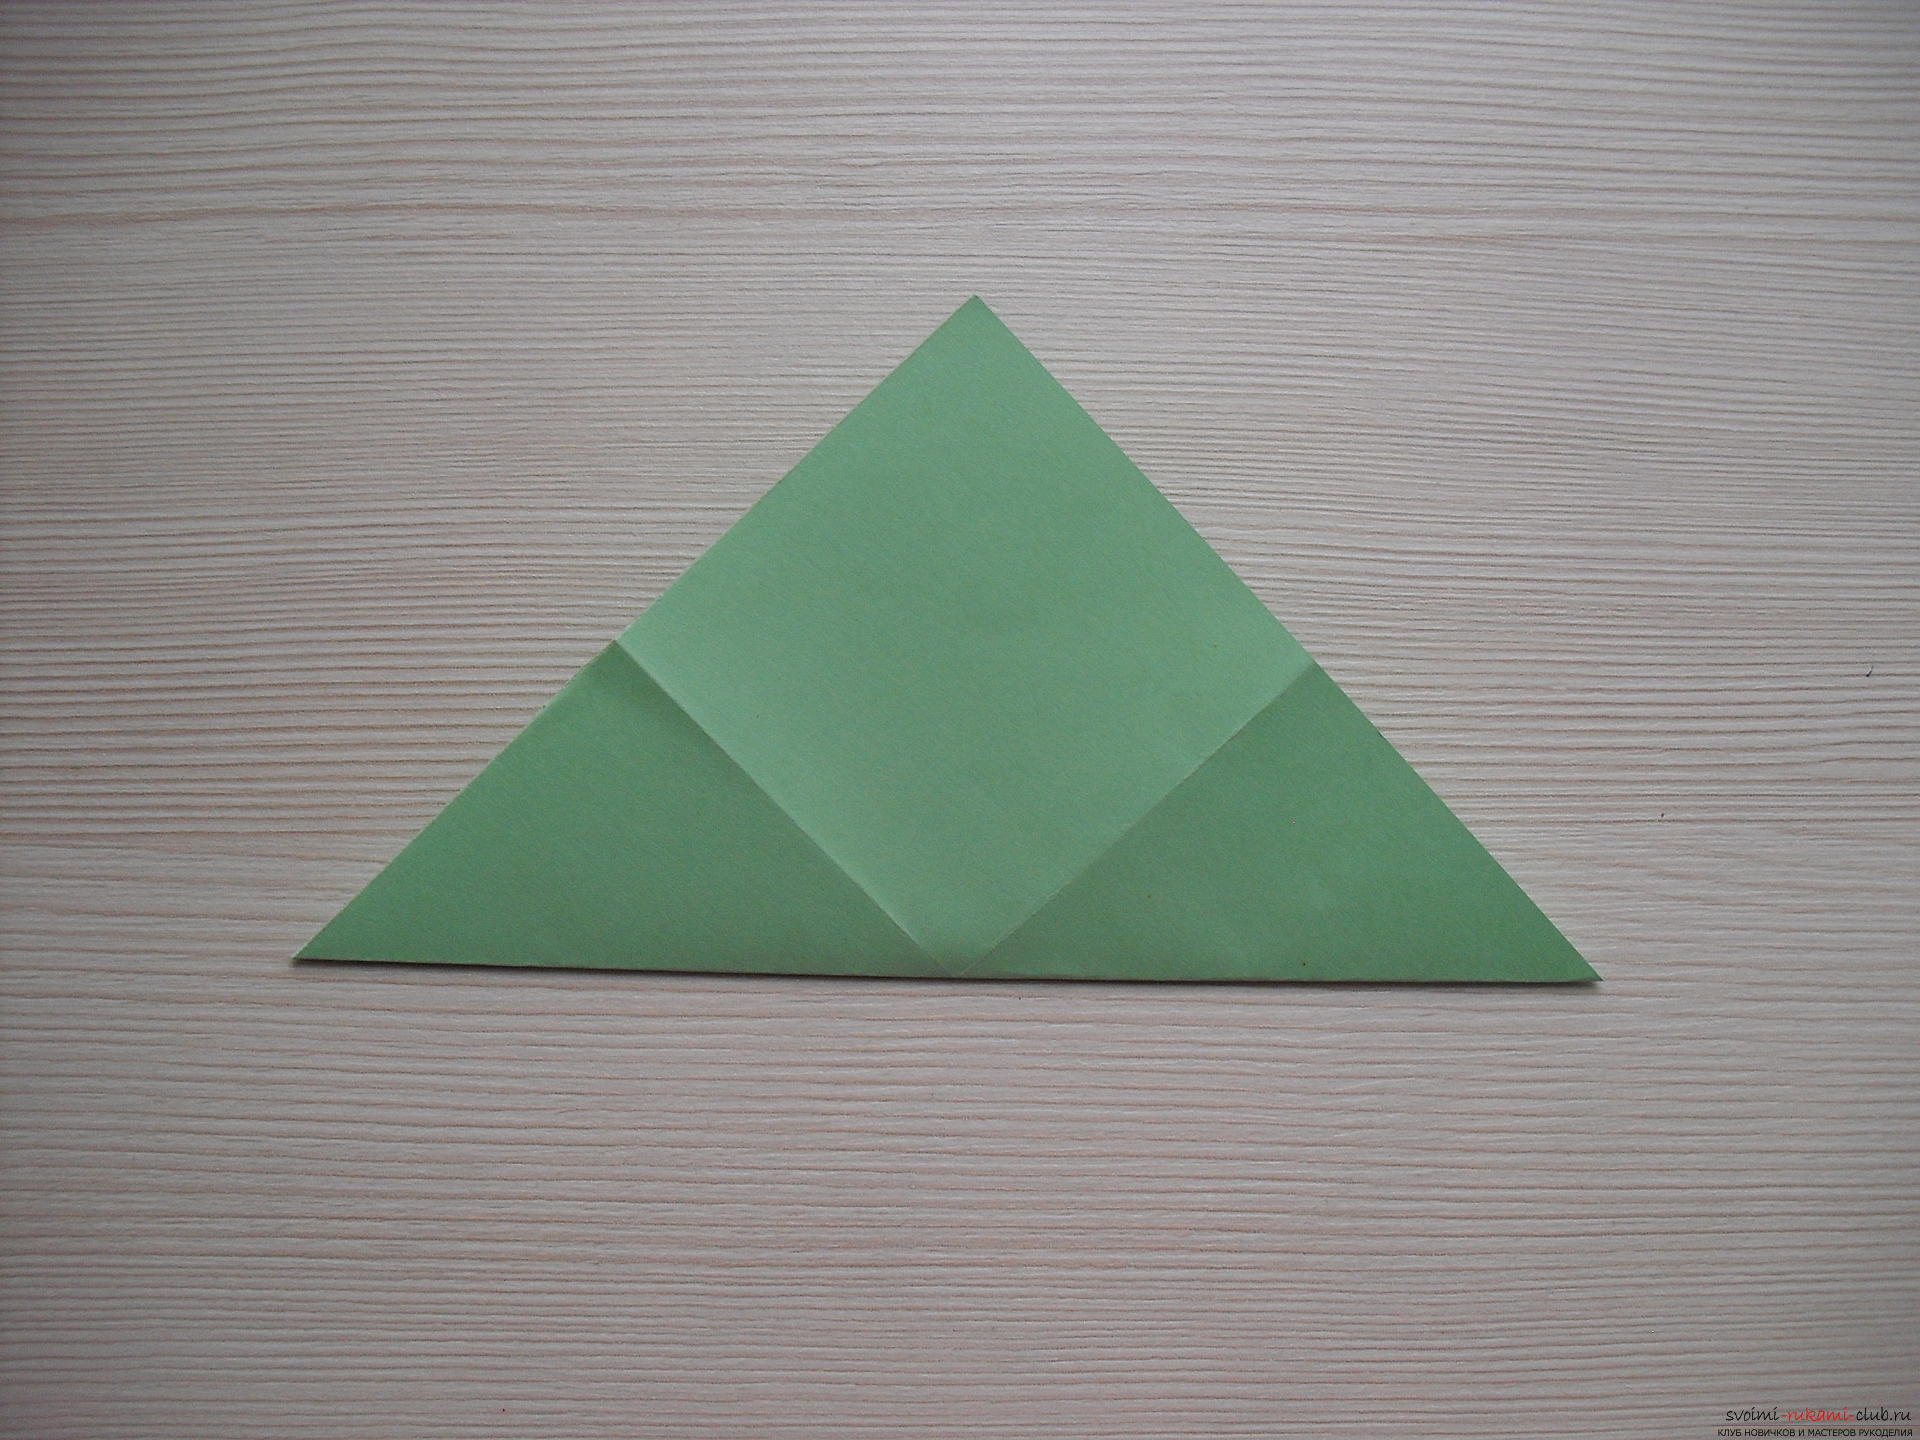 Этот мастер-класс расскажет как сделать своими руками поделку из бумаги - оригами-трансформер.. Фото №5